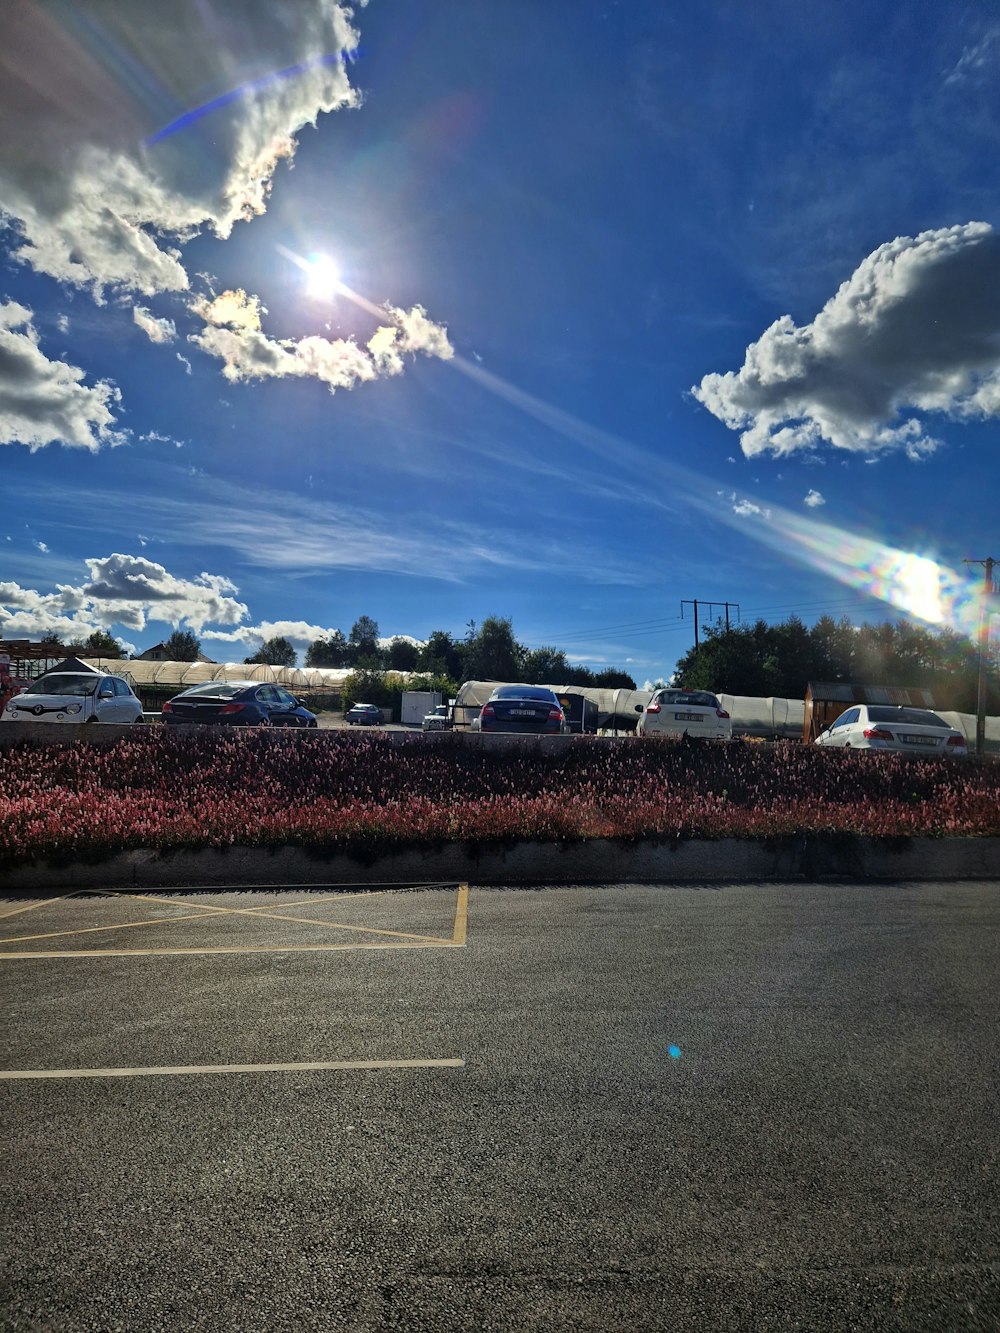 Ein Parkplatz mit Autos und ein blauer Himmel mit Wolken